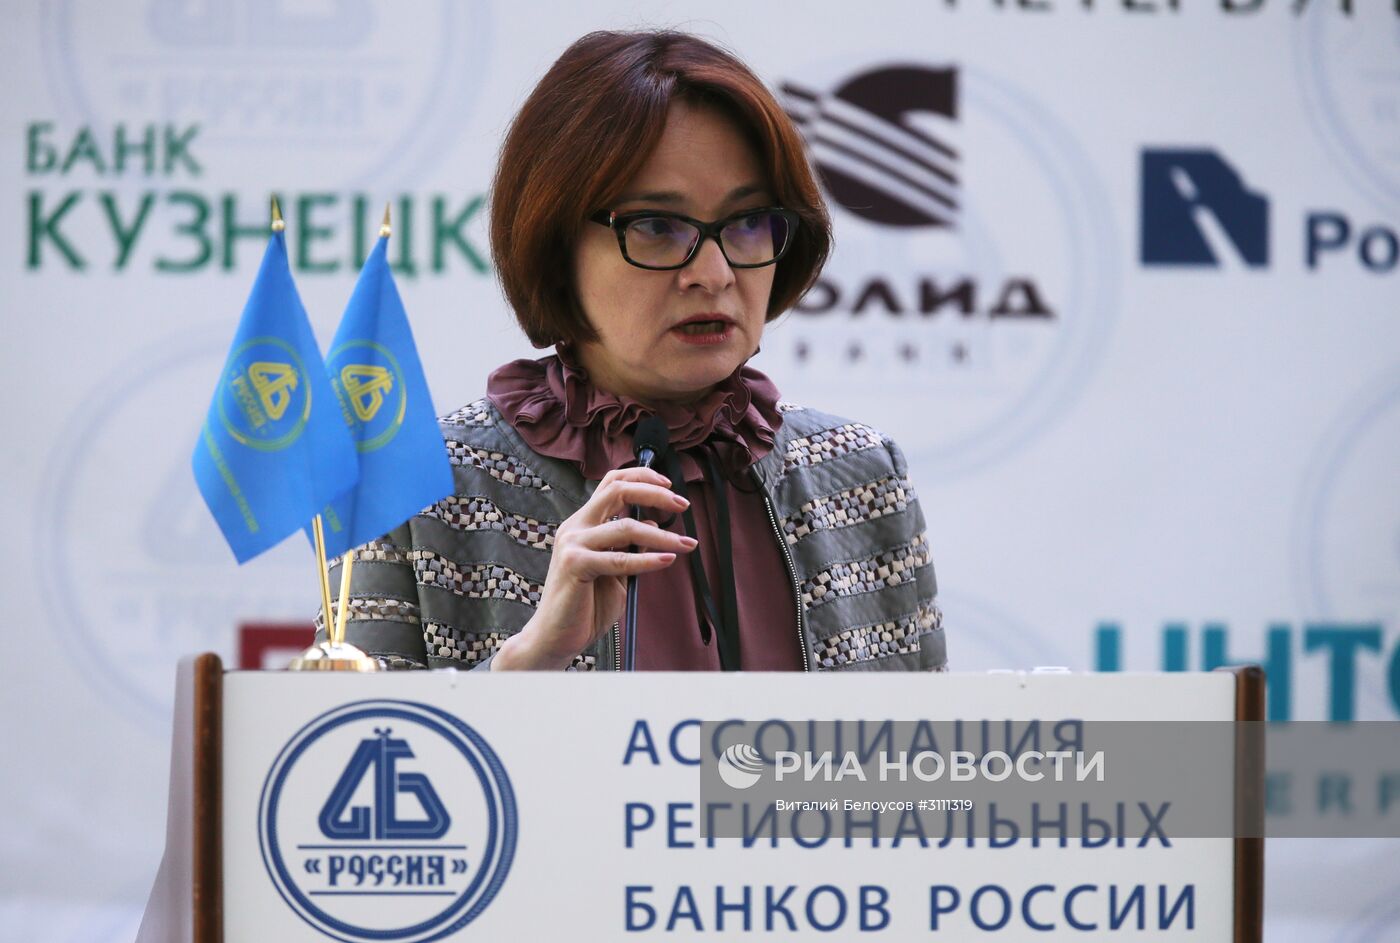 XXXII Общее собрание Ассоциации региональных банков России